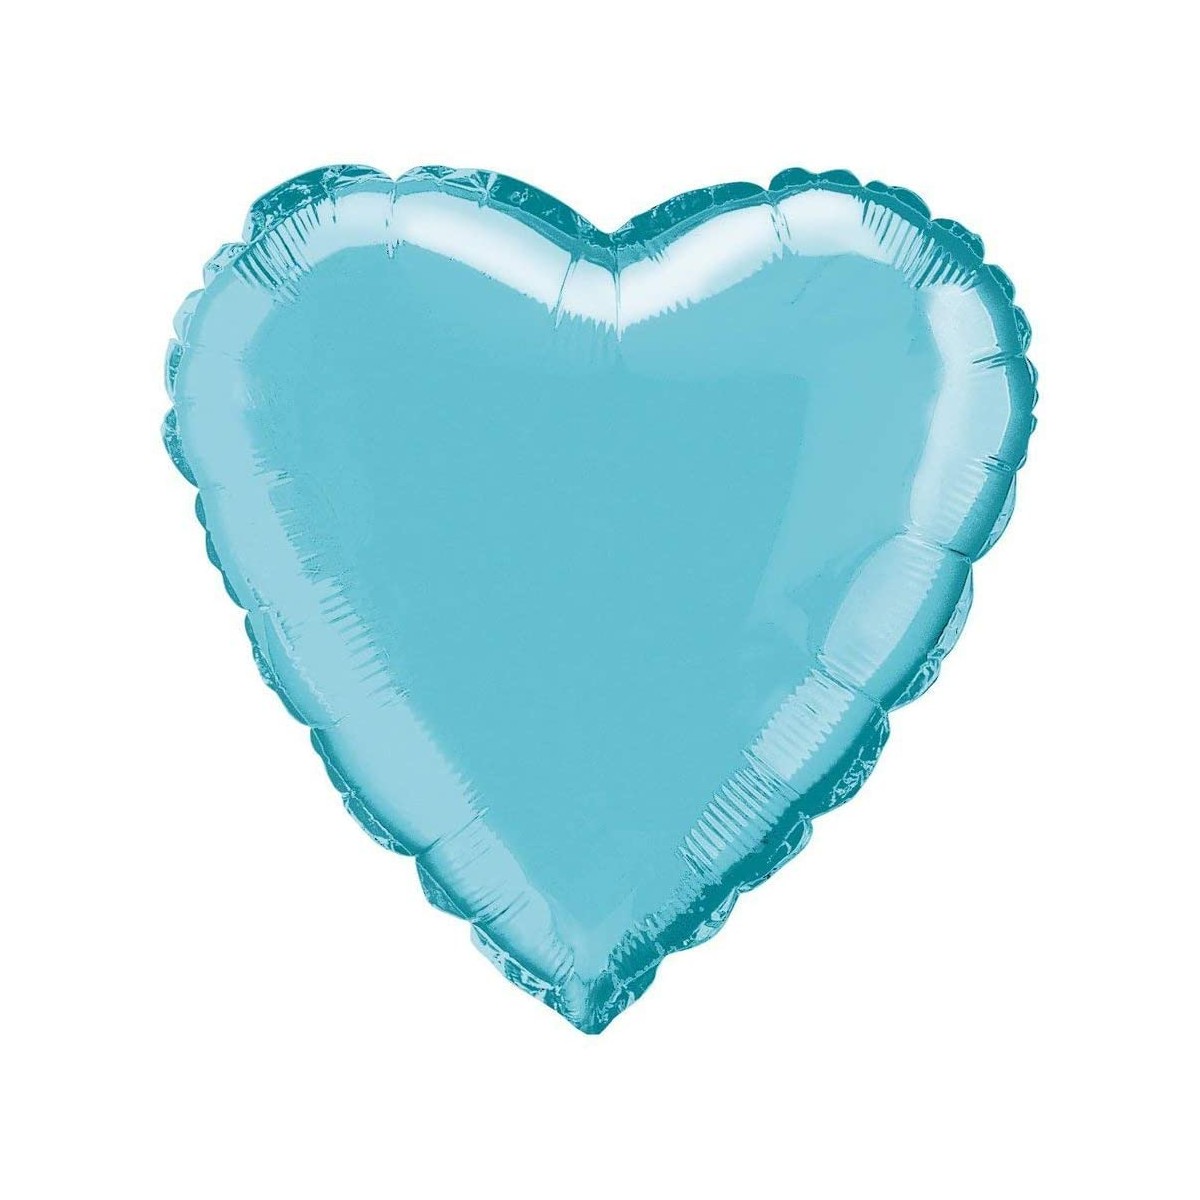 Palloncino foil cuore azzurro da 45 cm, in alluminio, per feste